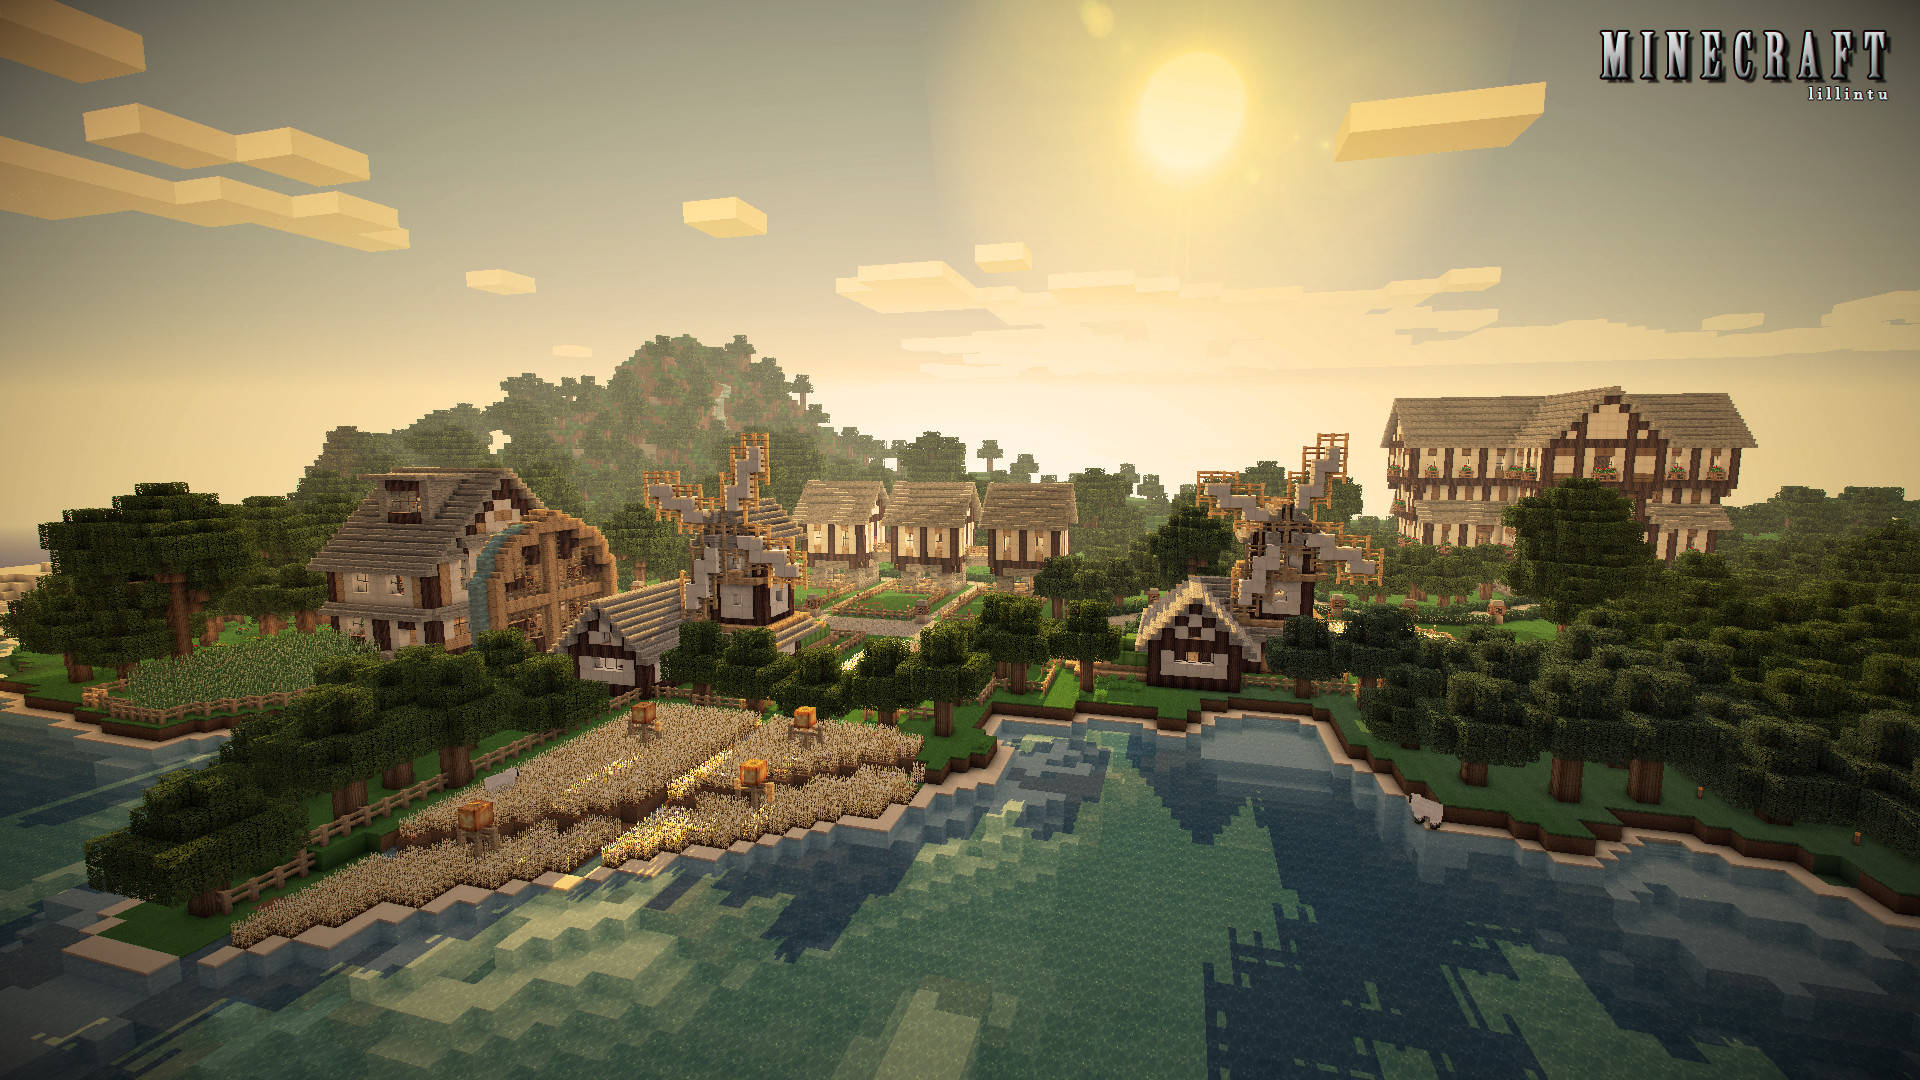 Birch Wood Mansion And Village Minecraft Hd Background